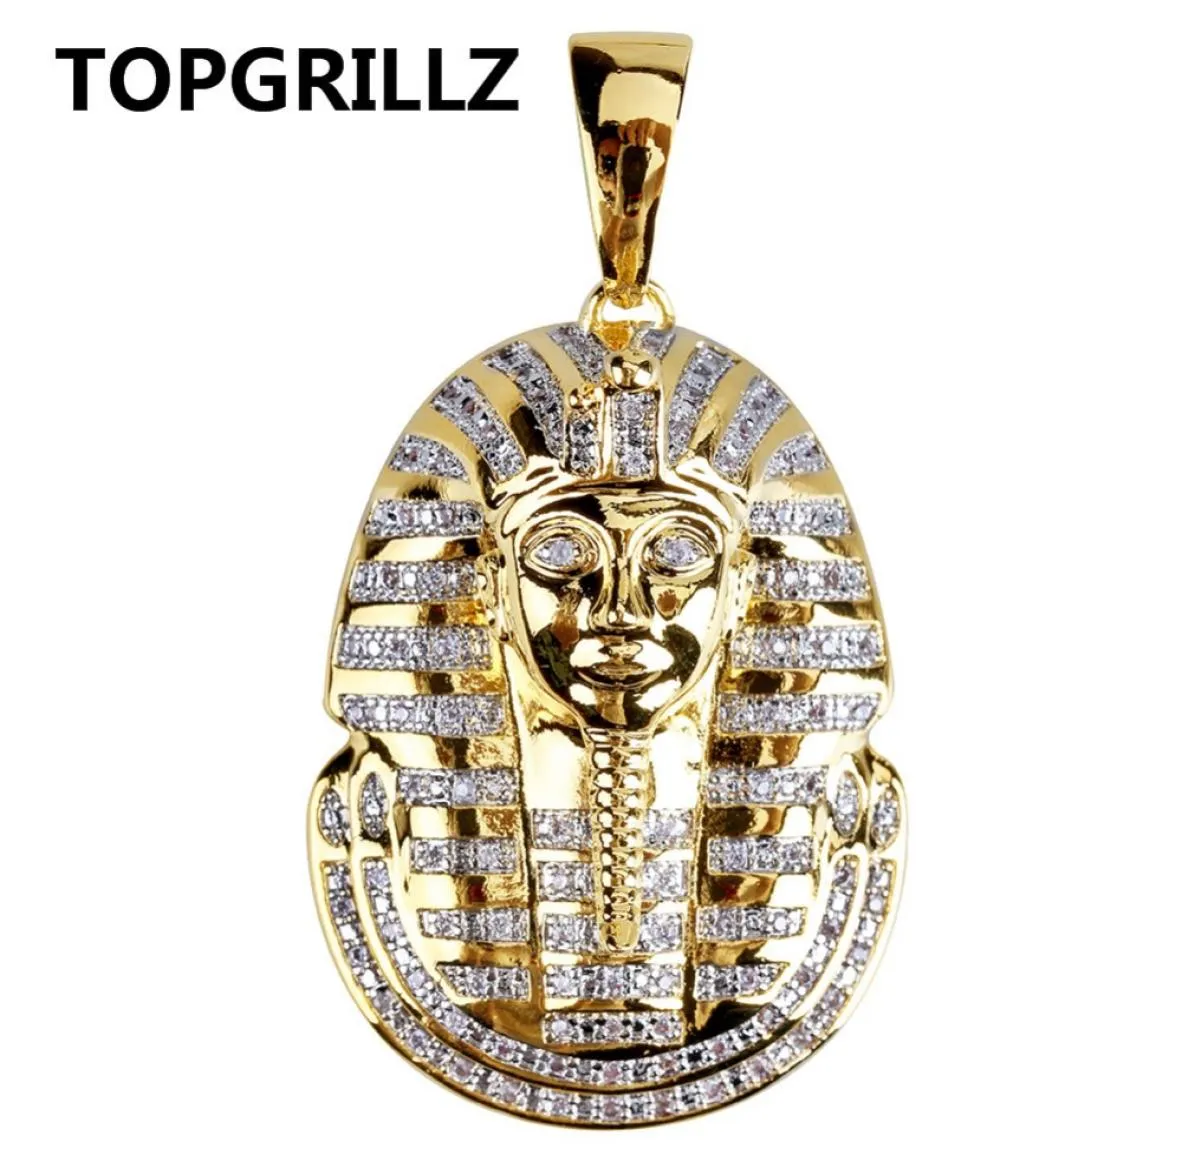 TopGrillz Hip Hop Dewelry Shareed Out Золотый цвет, покрытый микропрокатом Cz Stone, египетское подвесное ожерелье